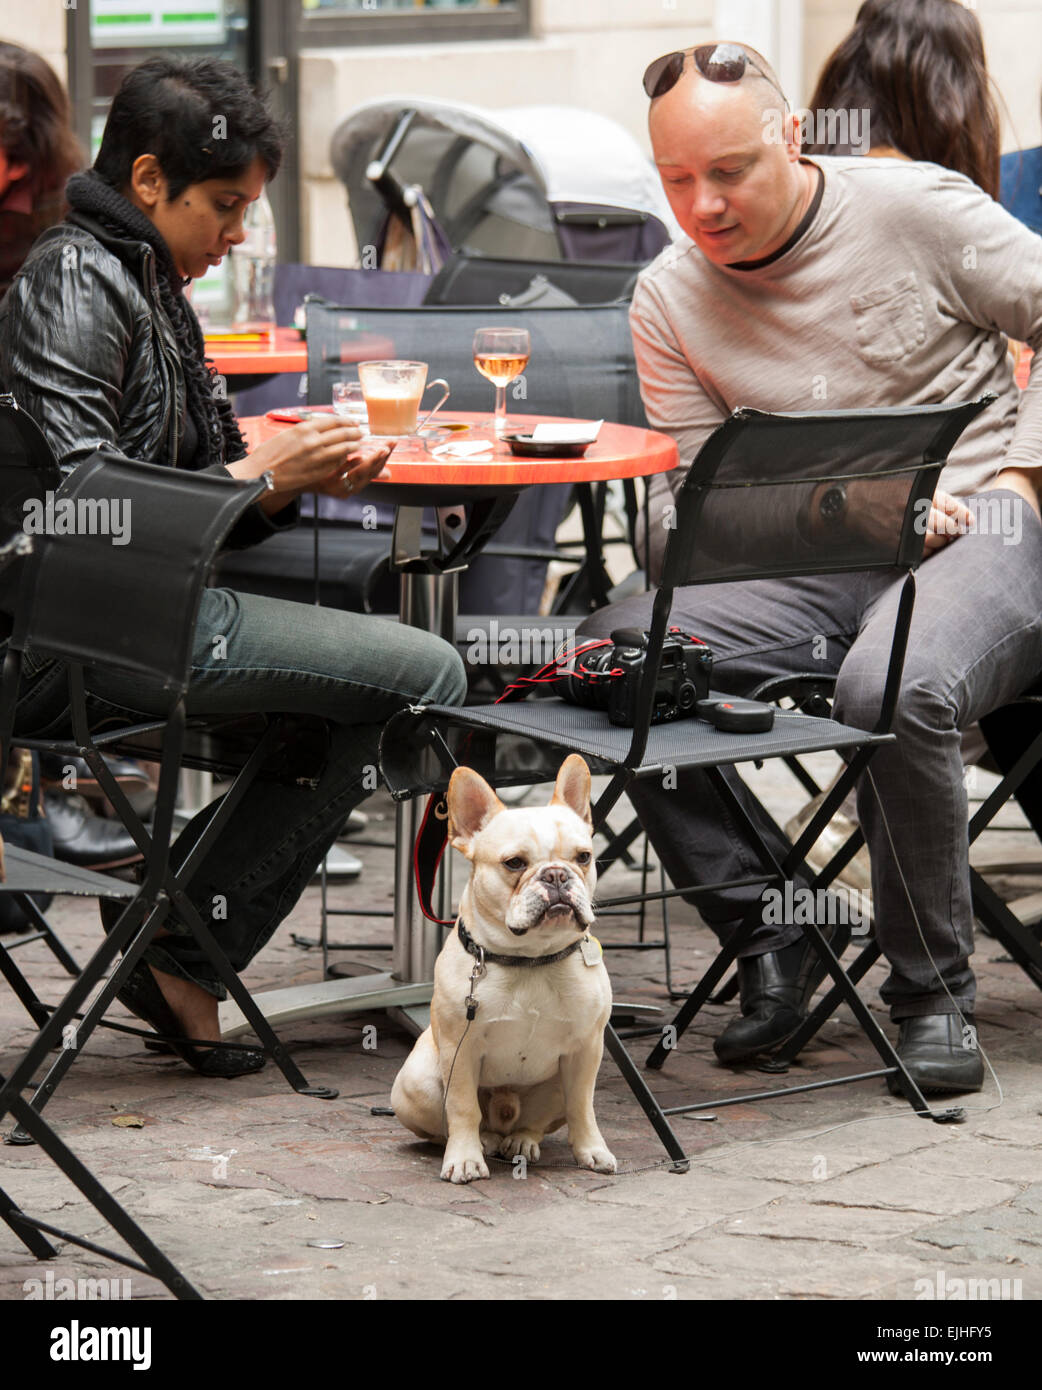 Touristen mit Hund in Straßencafé in Paris, Frankreich Stockfoto